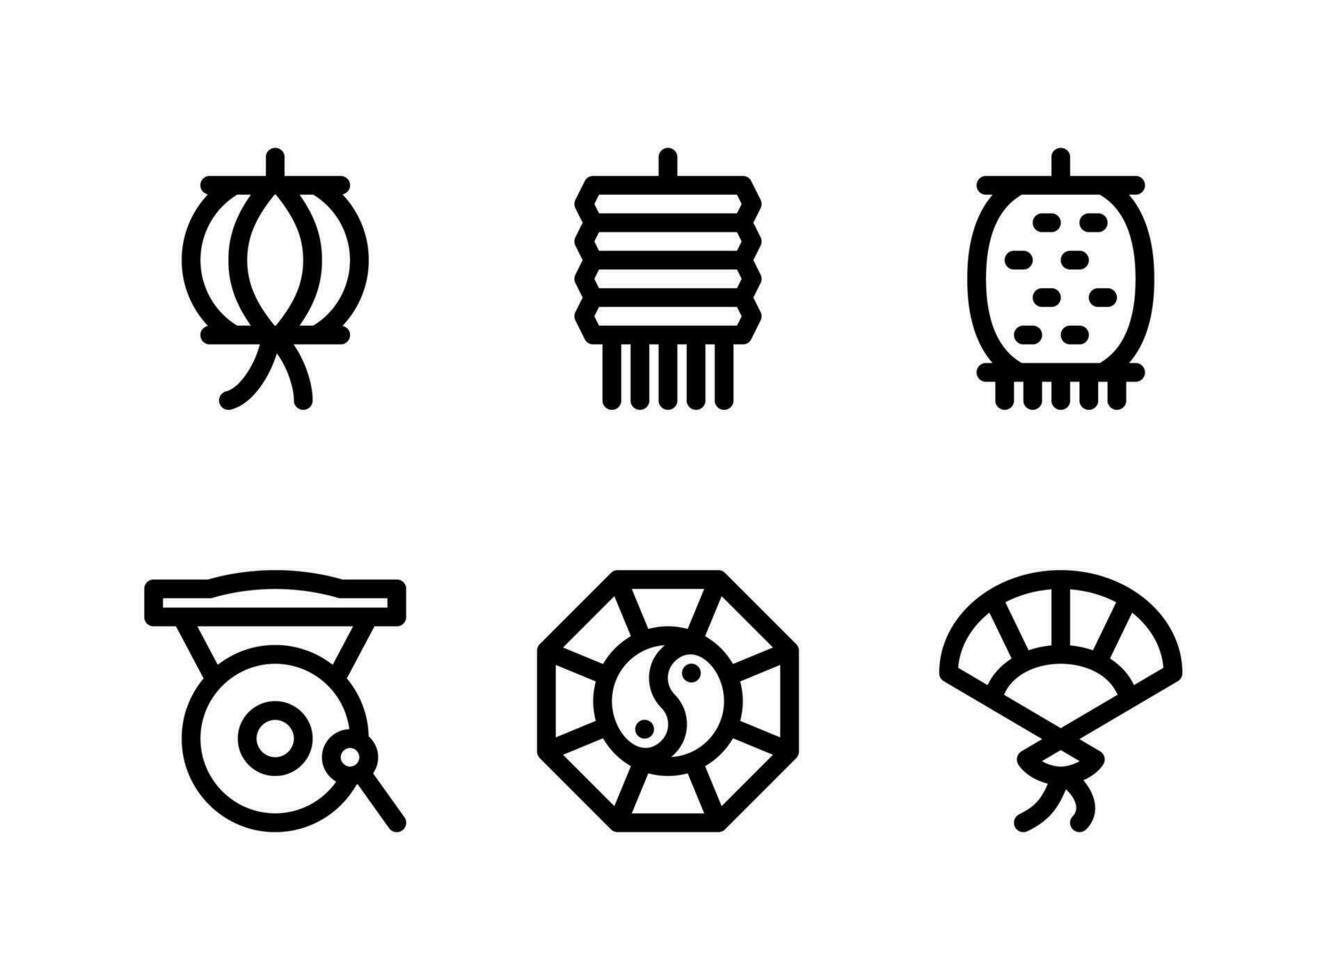 semplice set di icone della linea vettoriale relative al capodanno cinese. contiene icone come lanterna, gong, feng shui e altro.